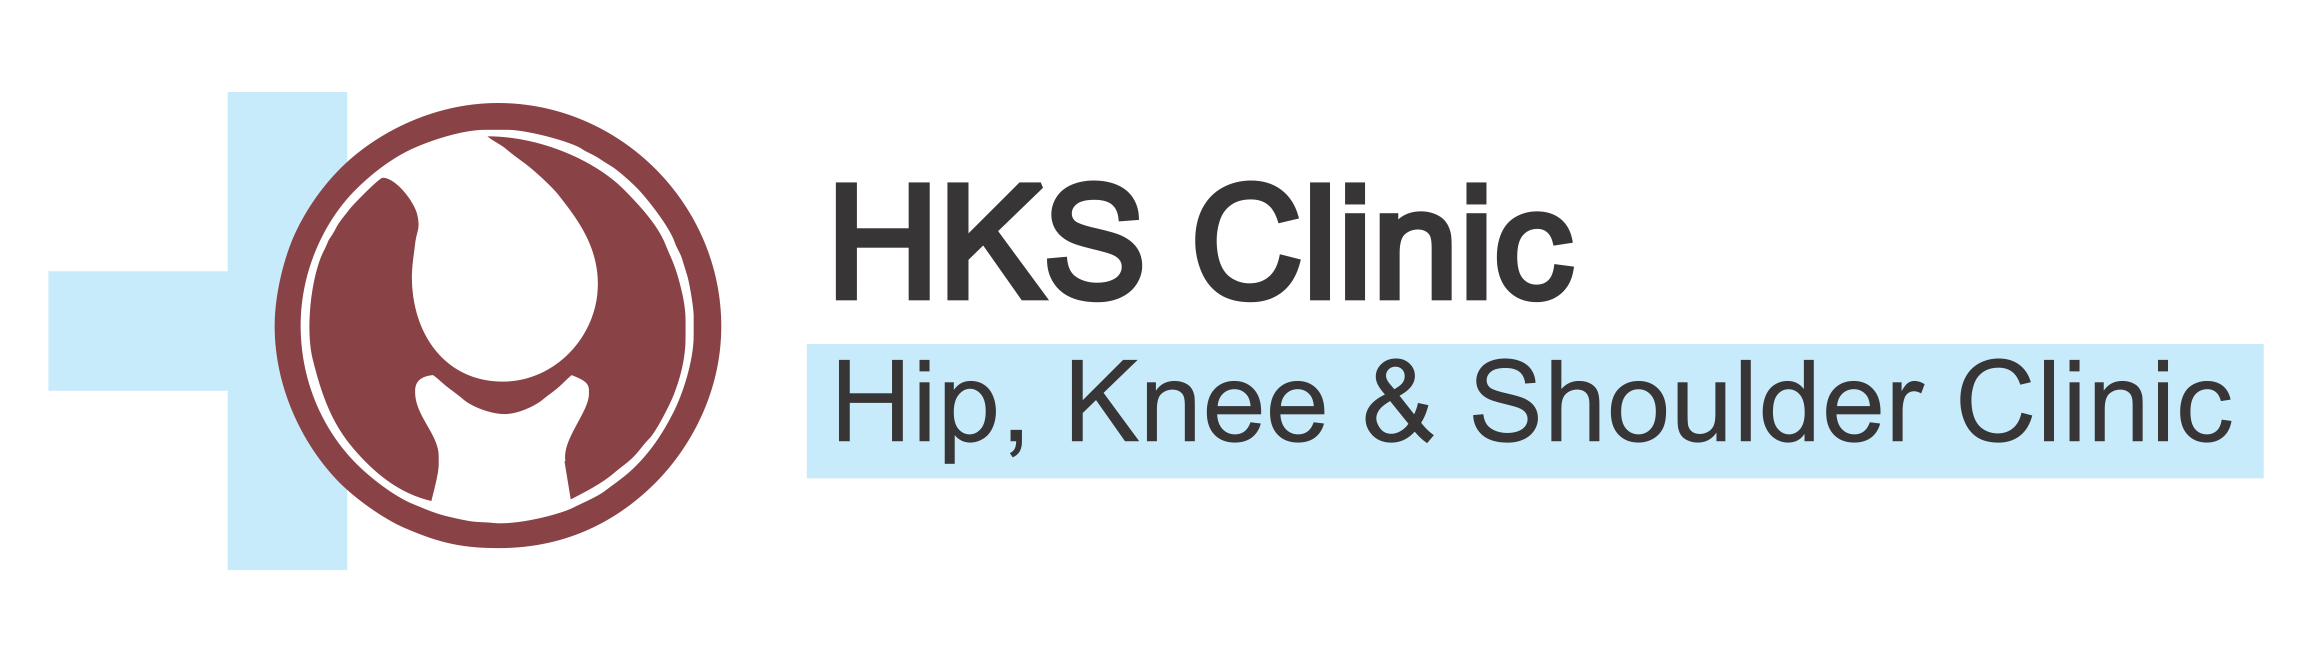 HKS Clinic